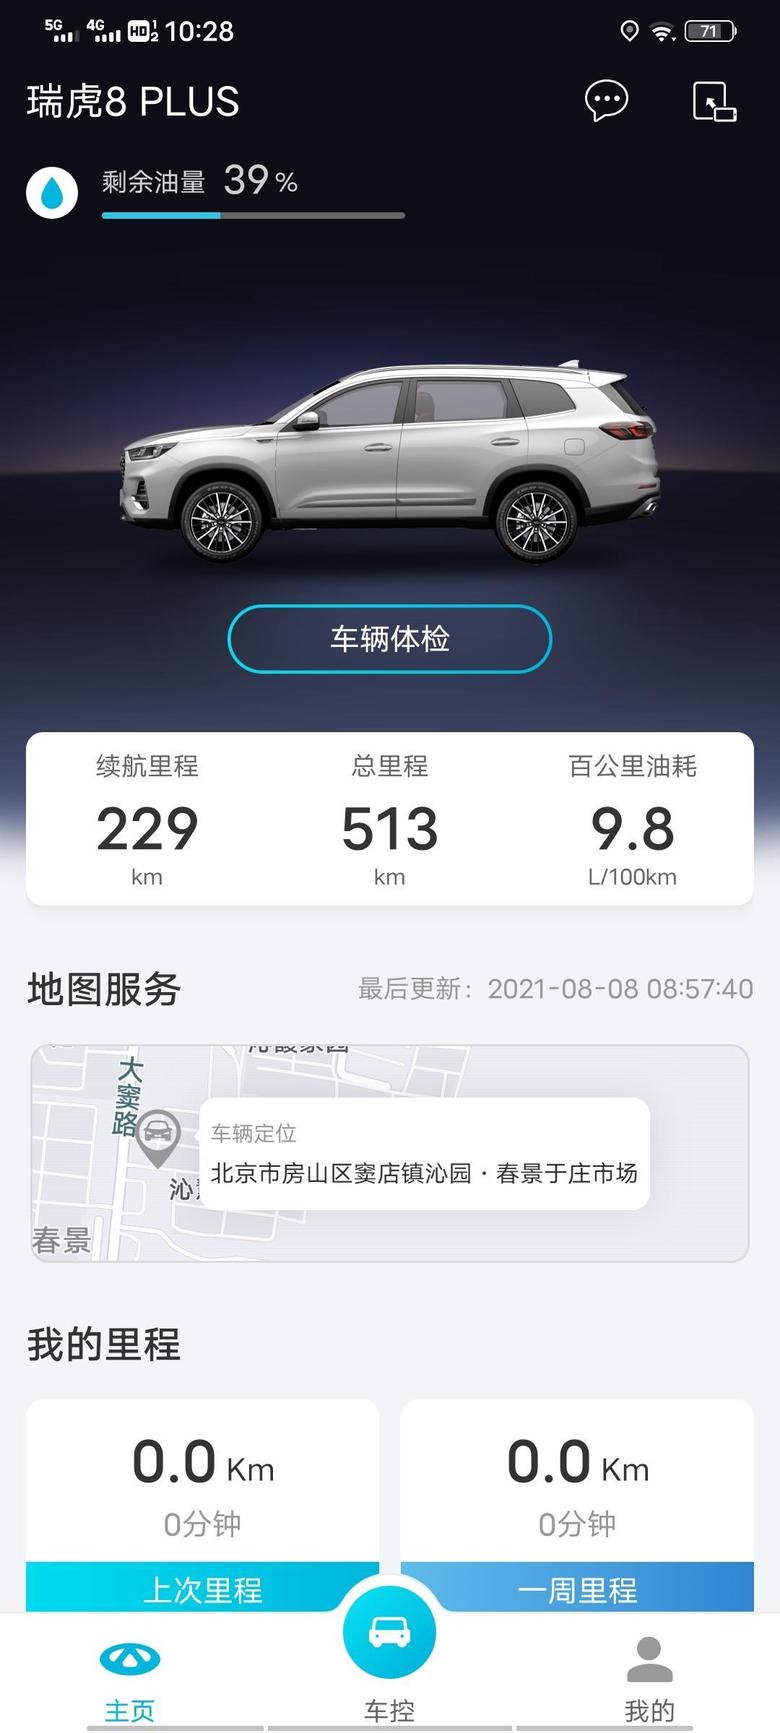 瑞虎8 plus 瑞虎8PLUS豪享七坐，七月底提的车，地标北京，跑了五百多公里，大多都是在市区，油耗9.8升